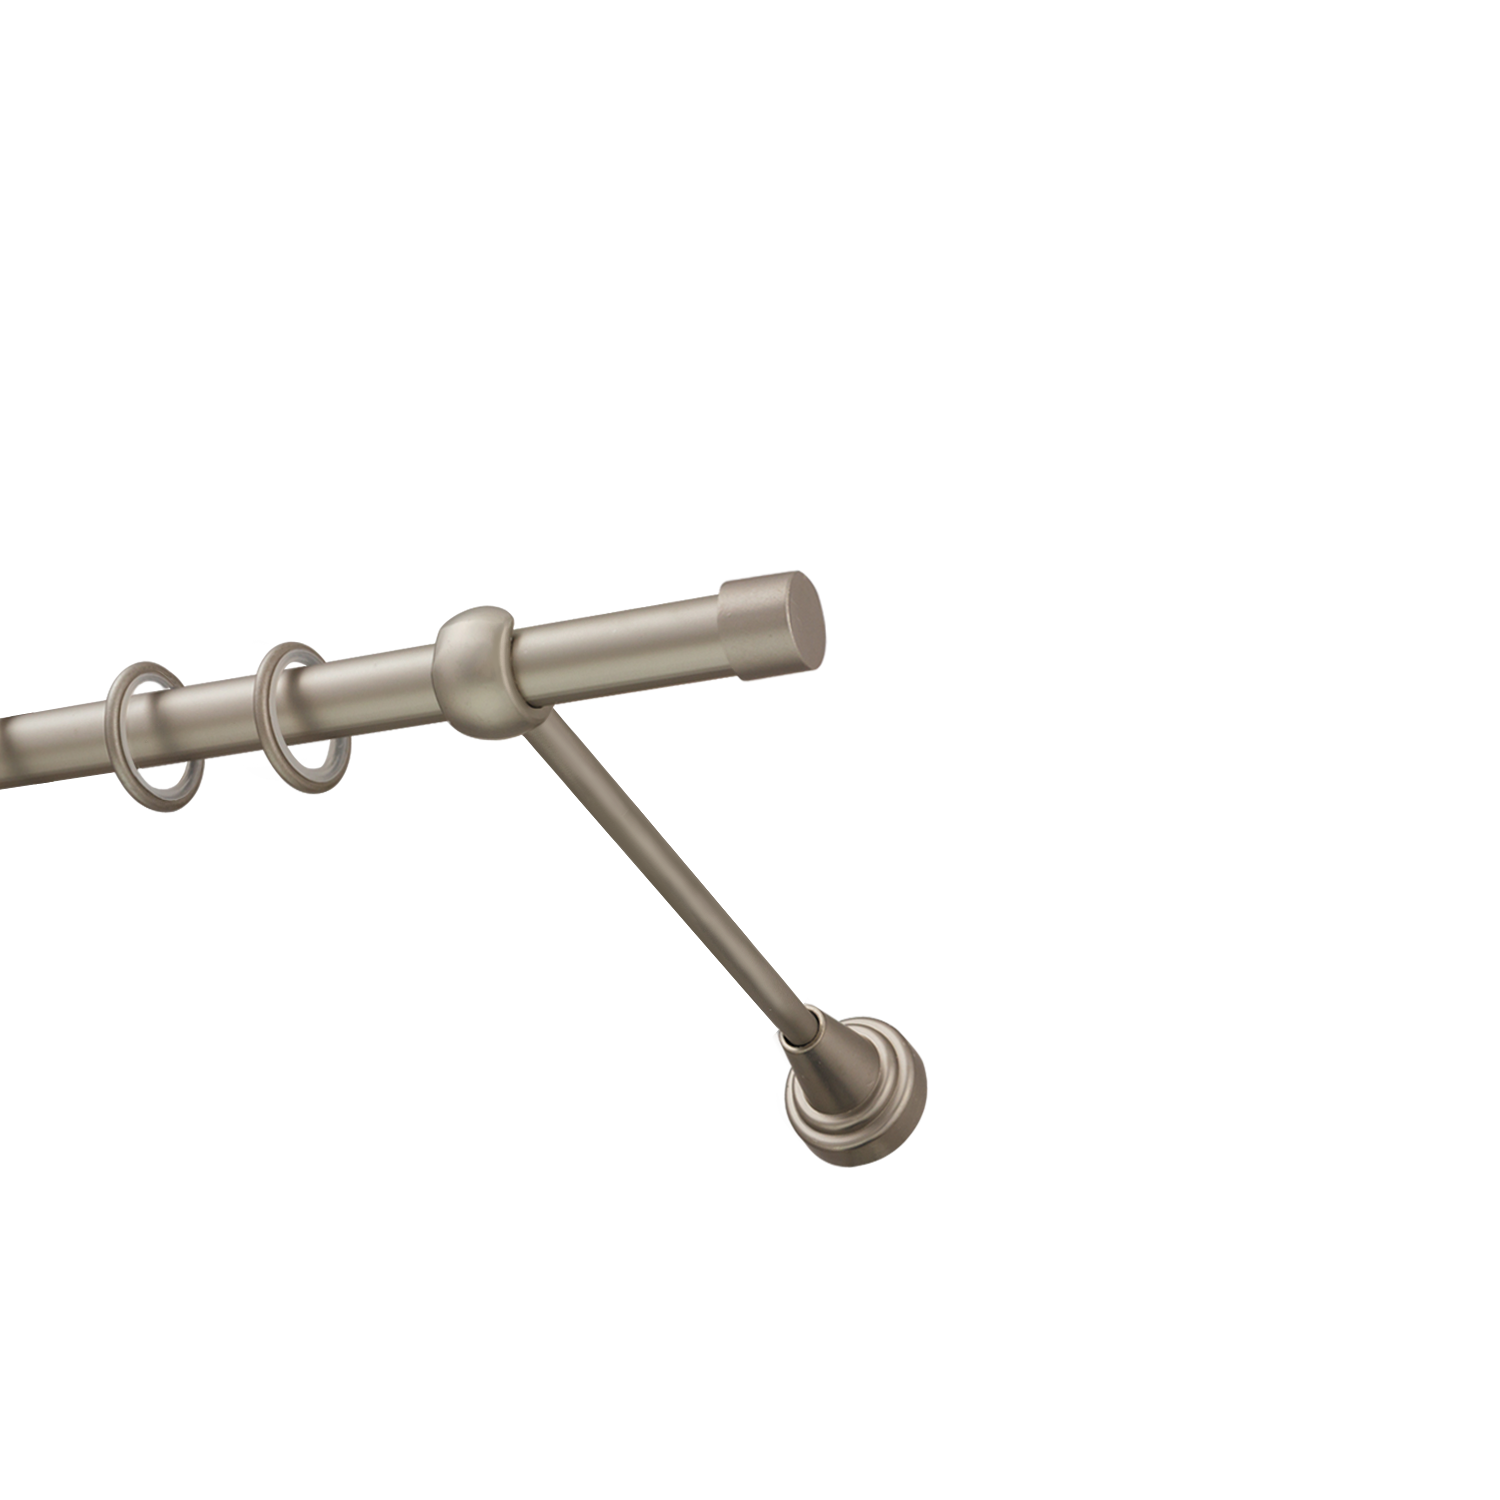 Металлический карниз для штор Заглушка, однорядный 16 мм, сталь, гладкая штанга, длина 300 см - фото Wikidecor.ru